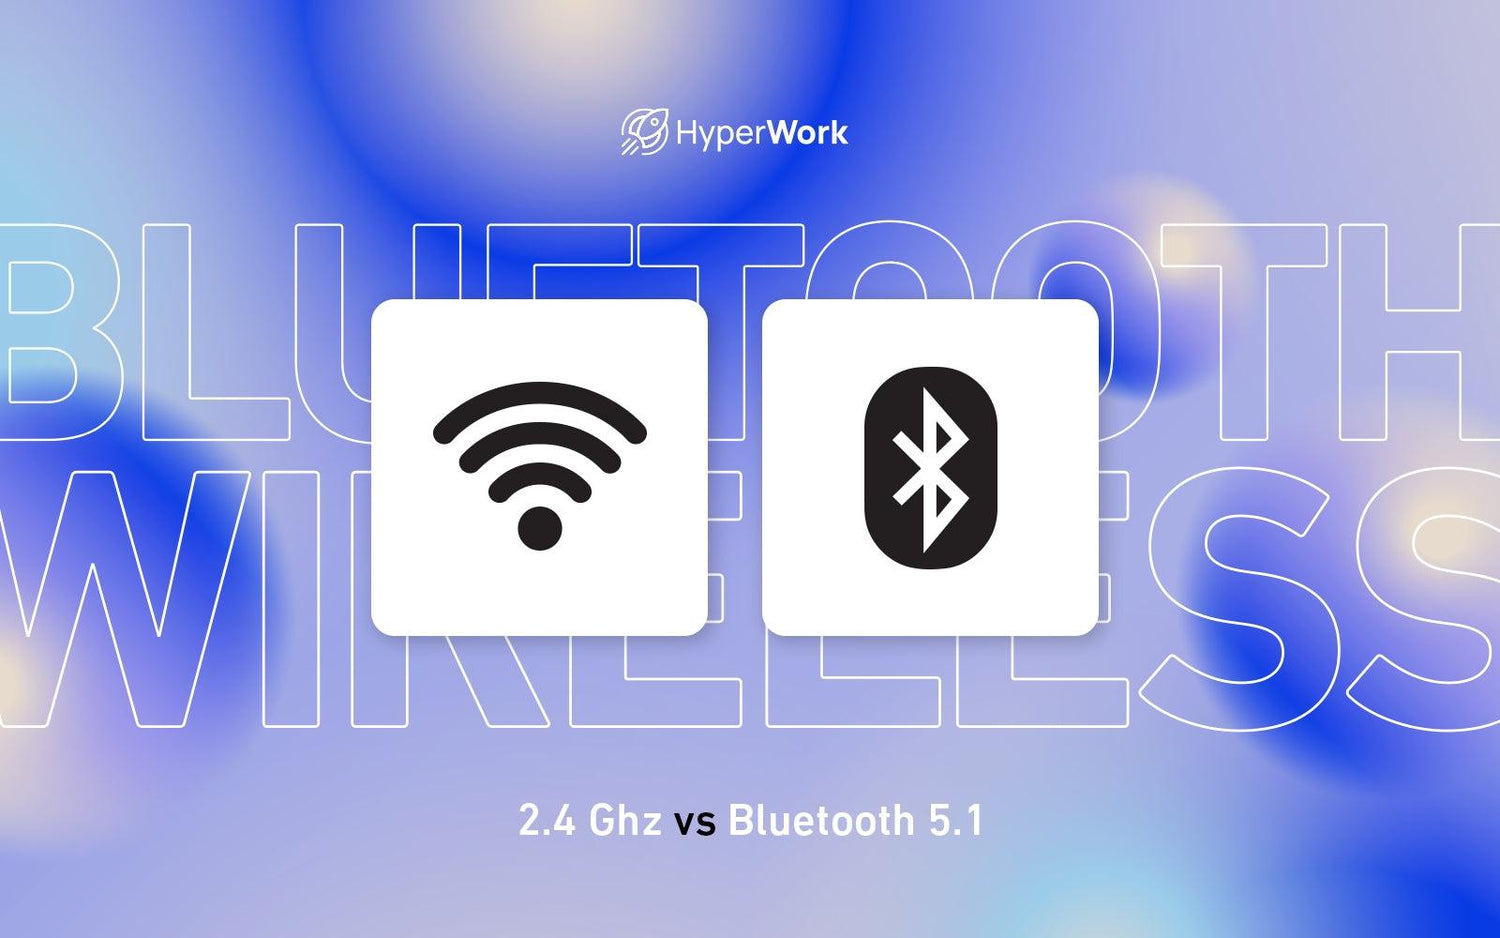 Nên kết nối theo chuẩn không dây 2.4 Ghz hay Bluetooth 5.1? - HyperWork